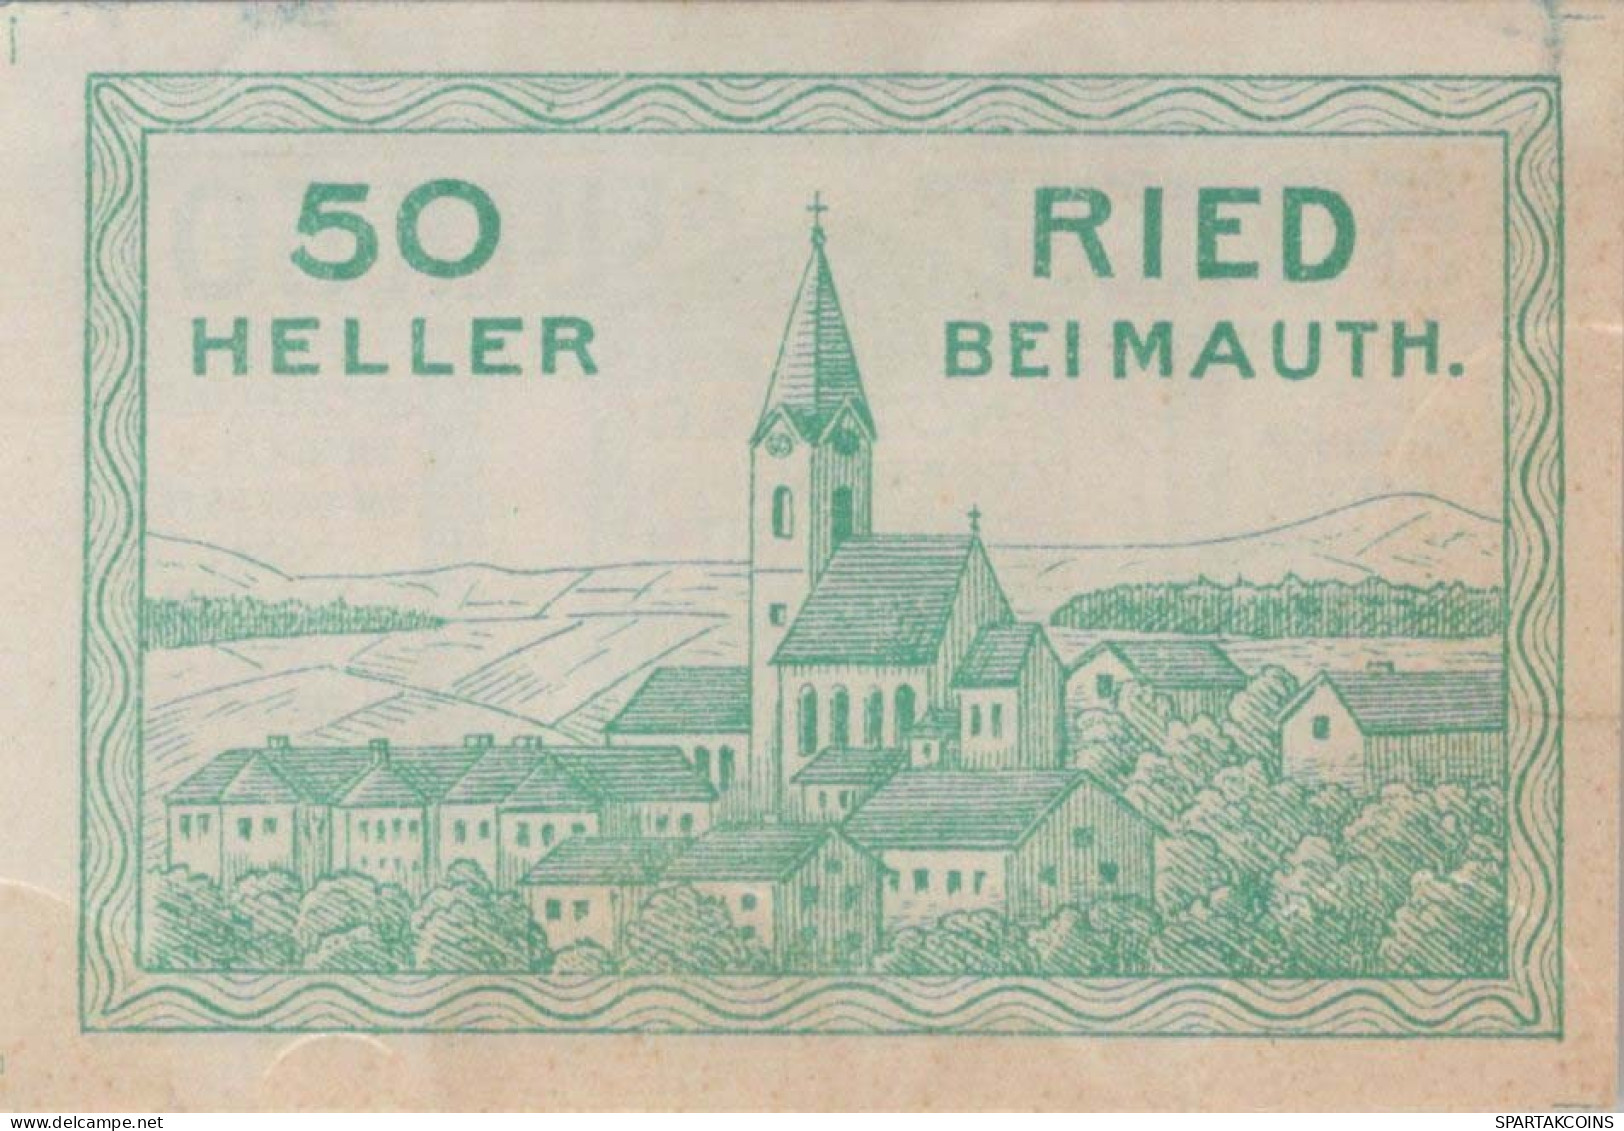 50 HELLER 1920 Stadt Ried Bei Mauthausen Österreich Notgeld Banknote #PD978 - [11] Emisiones Locales